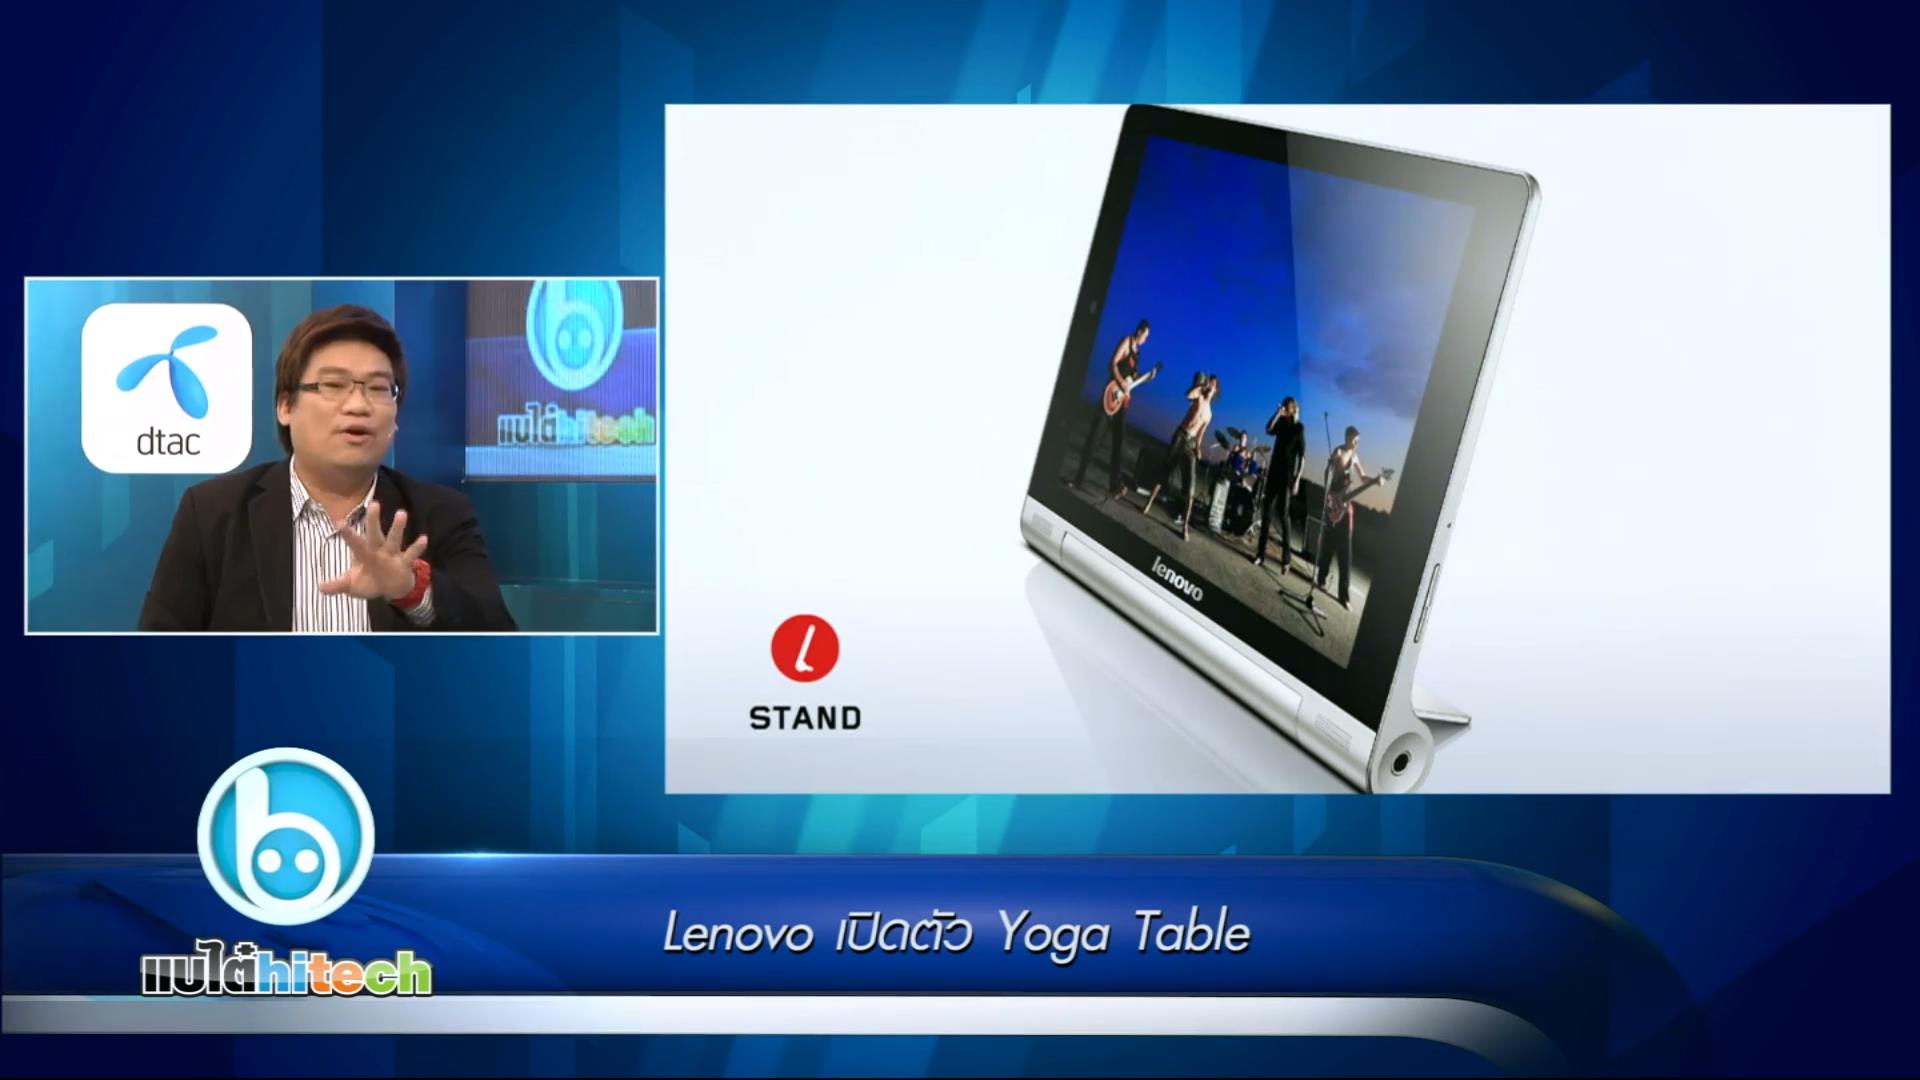 แบไต่ไฮเทค – Lenovo เปิดตัว Yoga Table